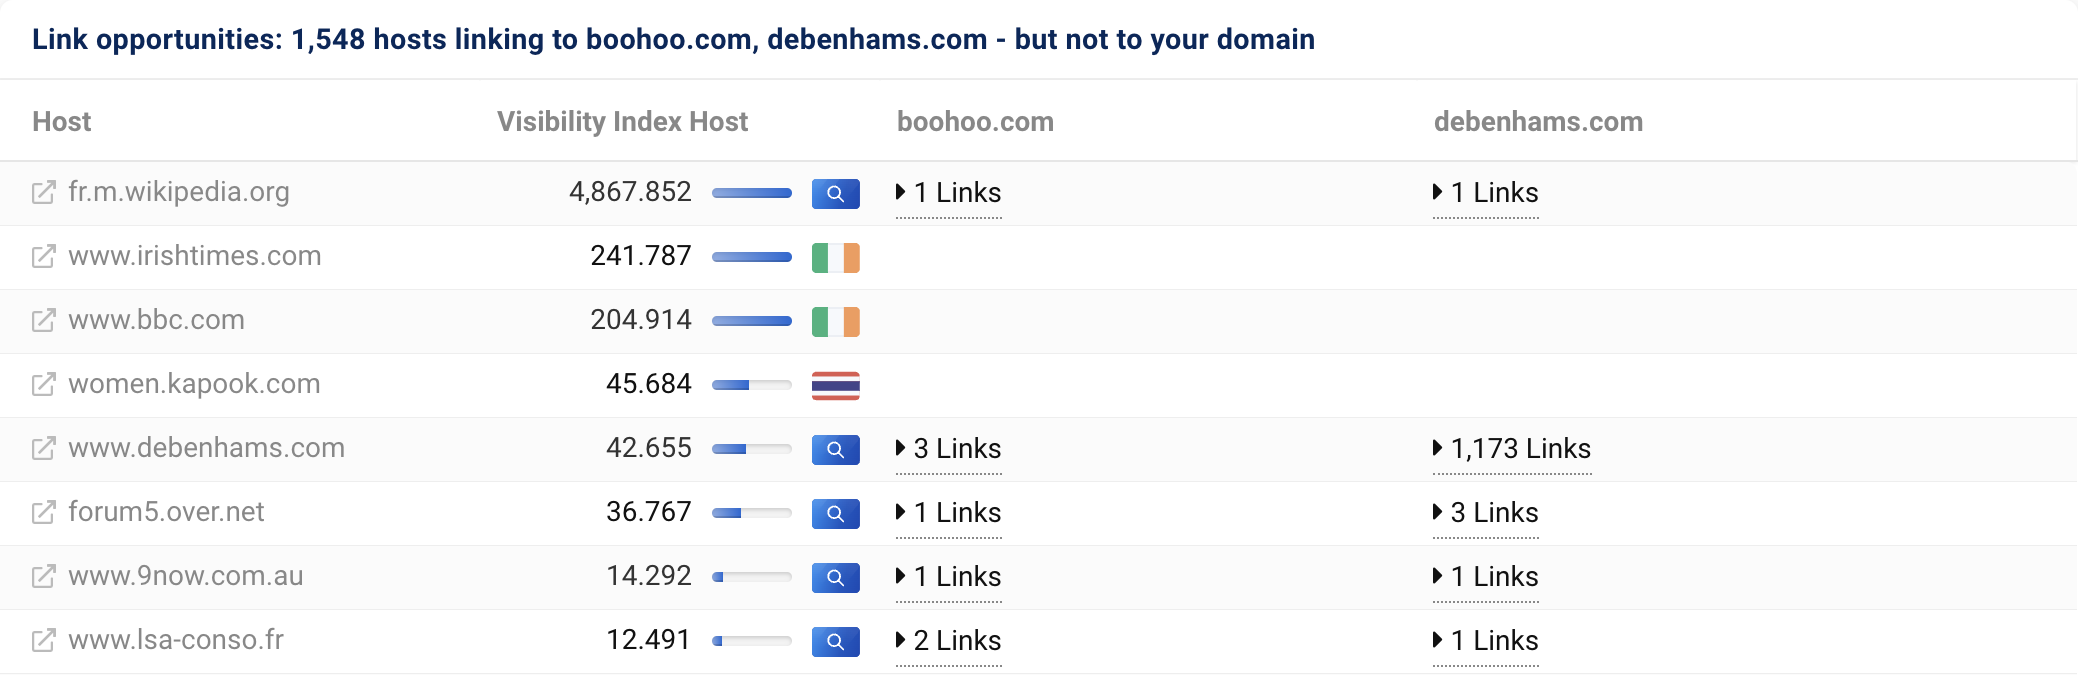 1,548 個主機連結到 boohoo.com 和 debenhams.com，但不連結到我們的網域 asos.com。